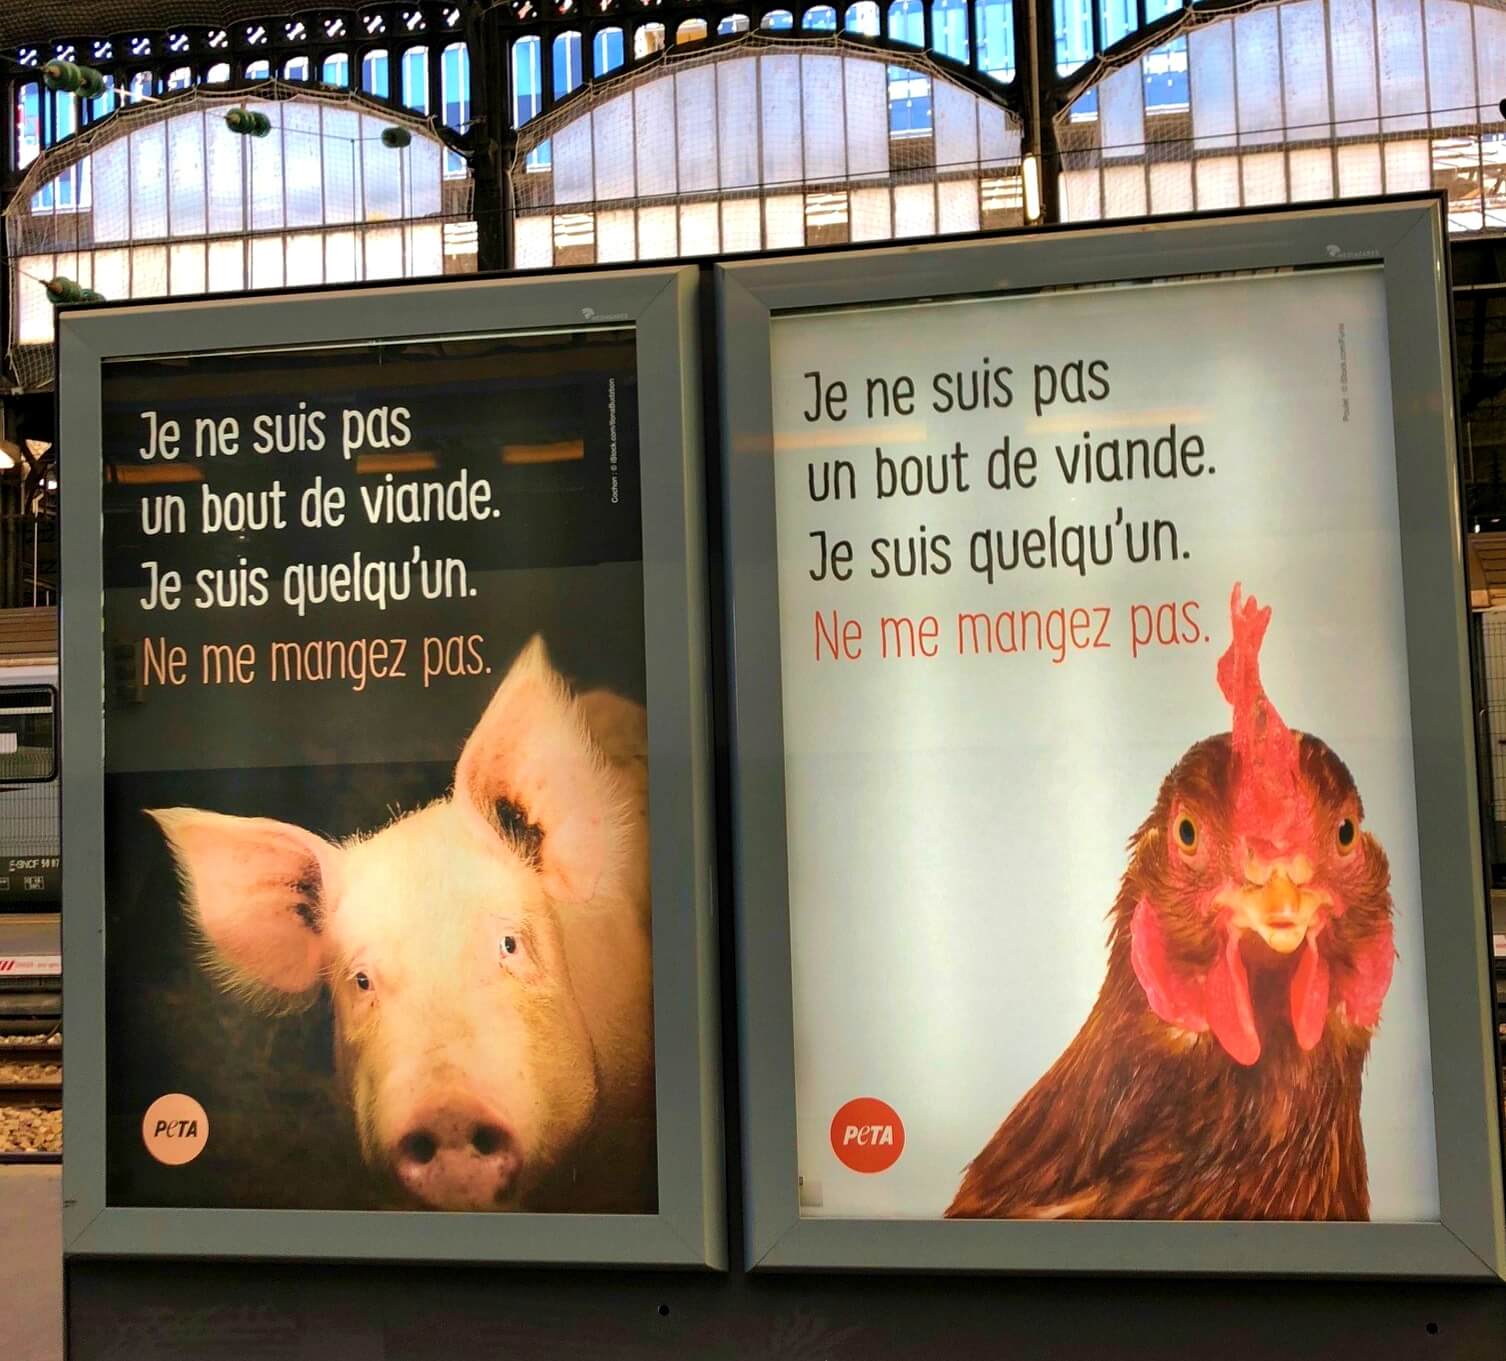 Les chiens au museau aplati devraient-ils être interdits en France ? -  Actualités - PETA France